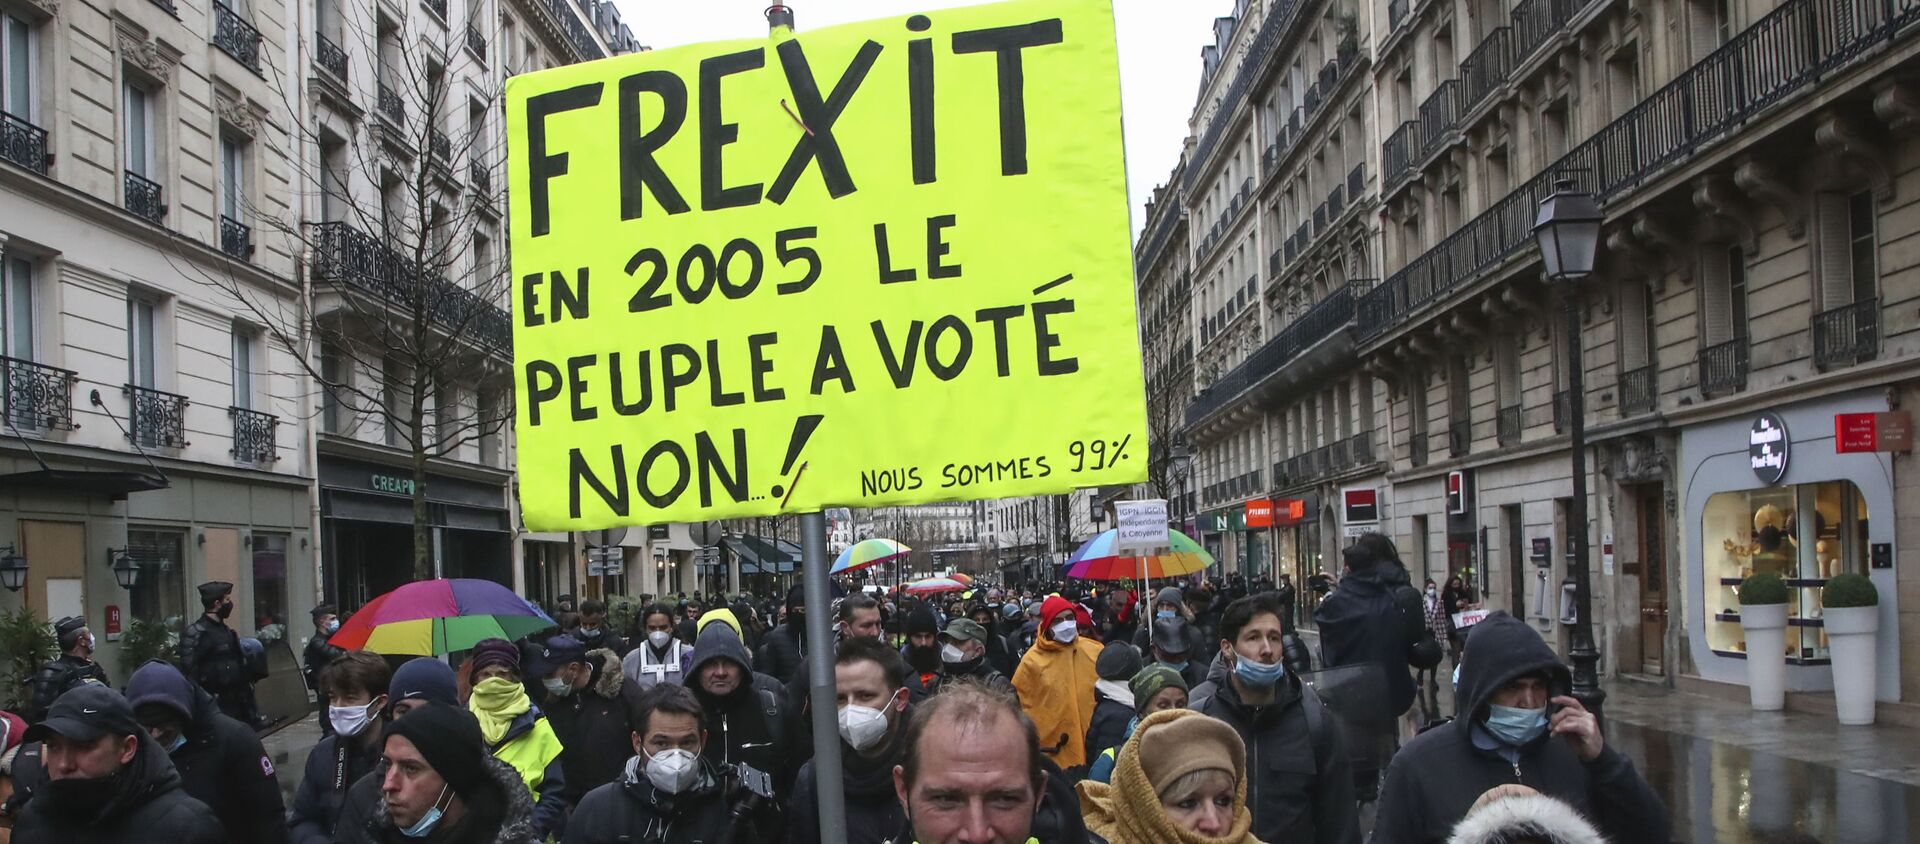 Người biểu tình cầm tấm áp phích có nội dung Frexit, năm 2005 mọi người đã bỏ phiếu chống lại việc này. - Sputnik Việt Nam, 1920, 18.04.2021